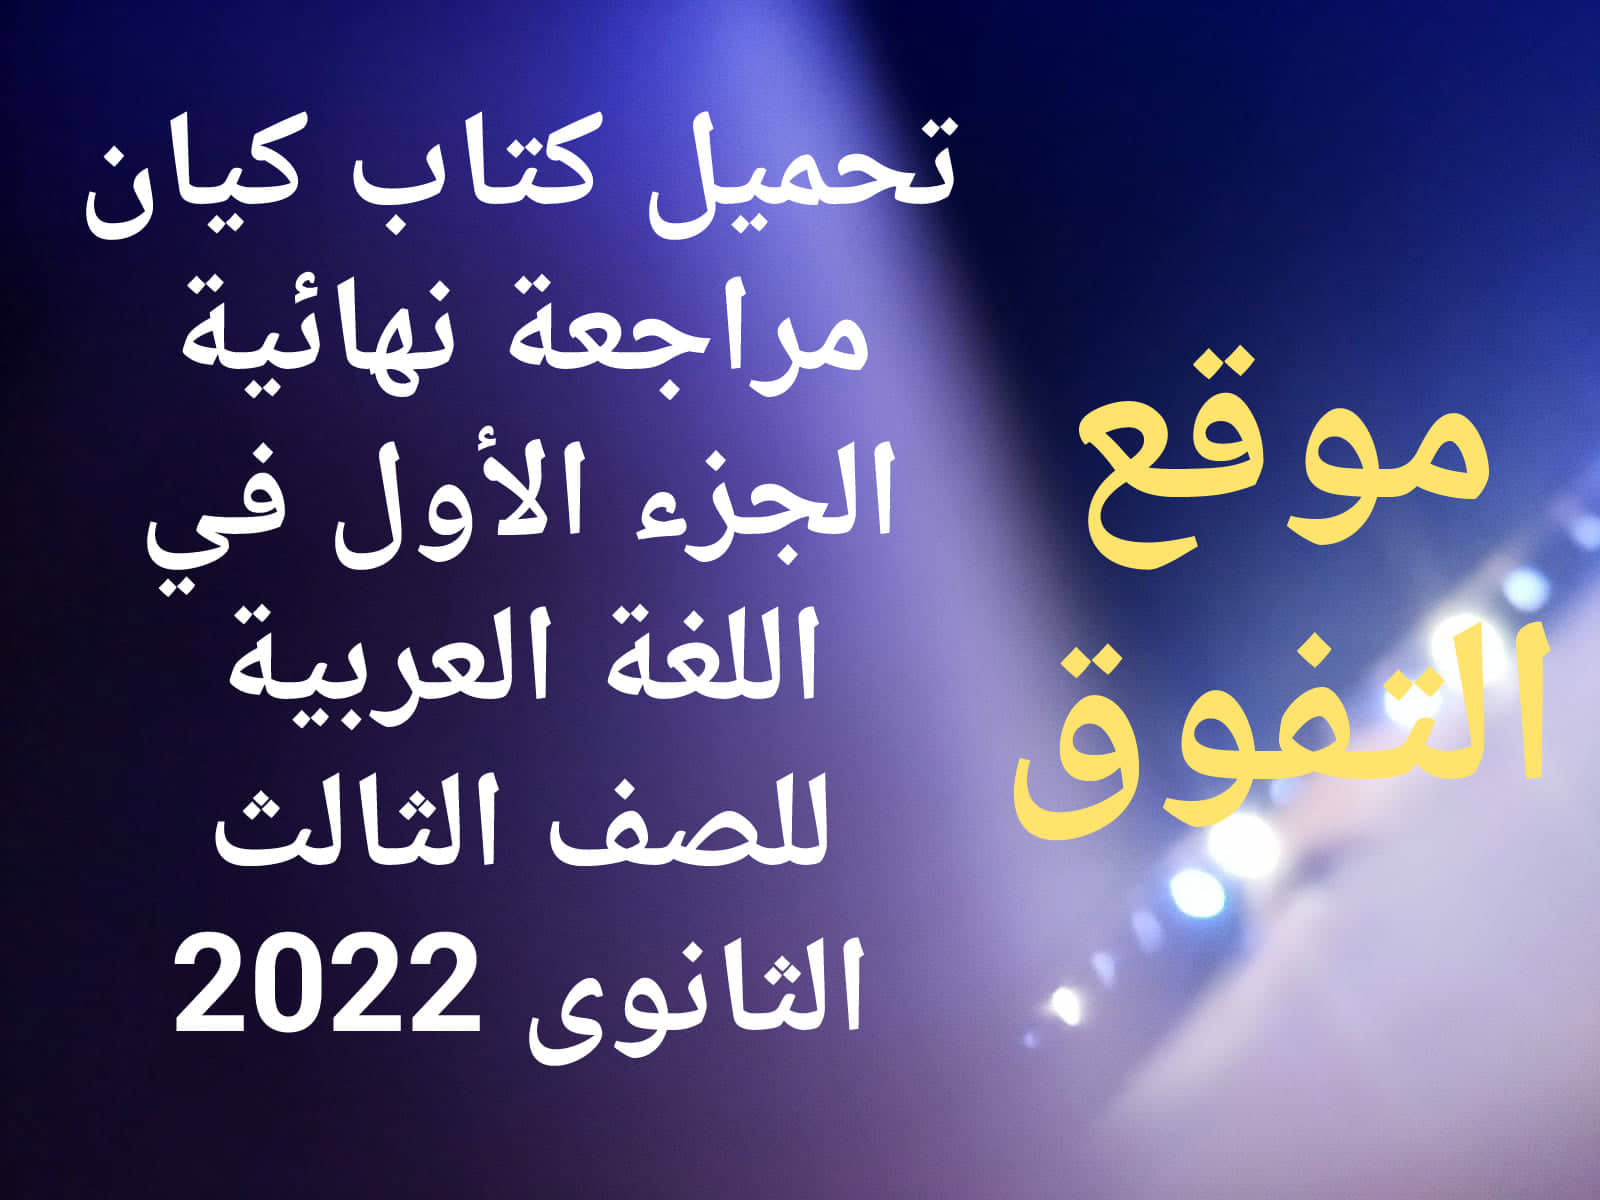 تحميل كتاب كيان مراجعة نهائية الجزء الاول في اللغة العربية للصف الثالث الثانوى 2022 pdf